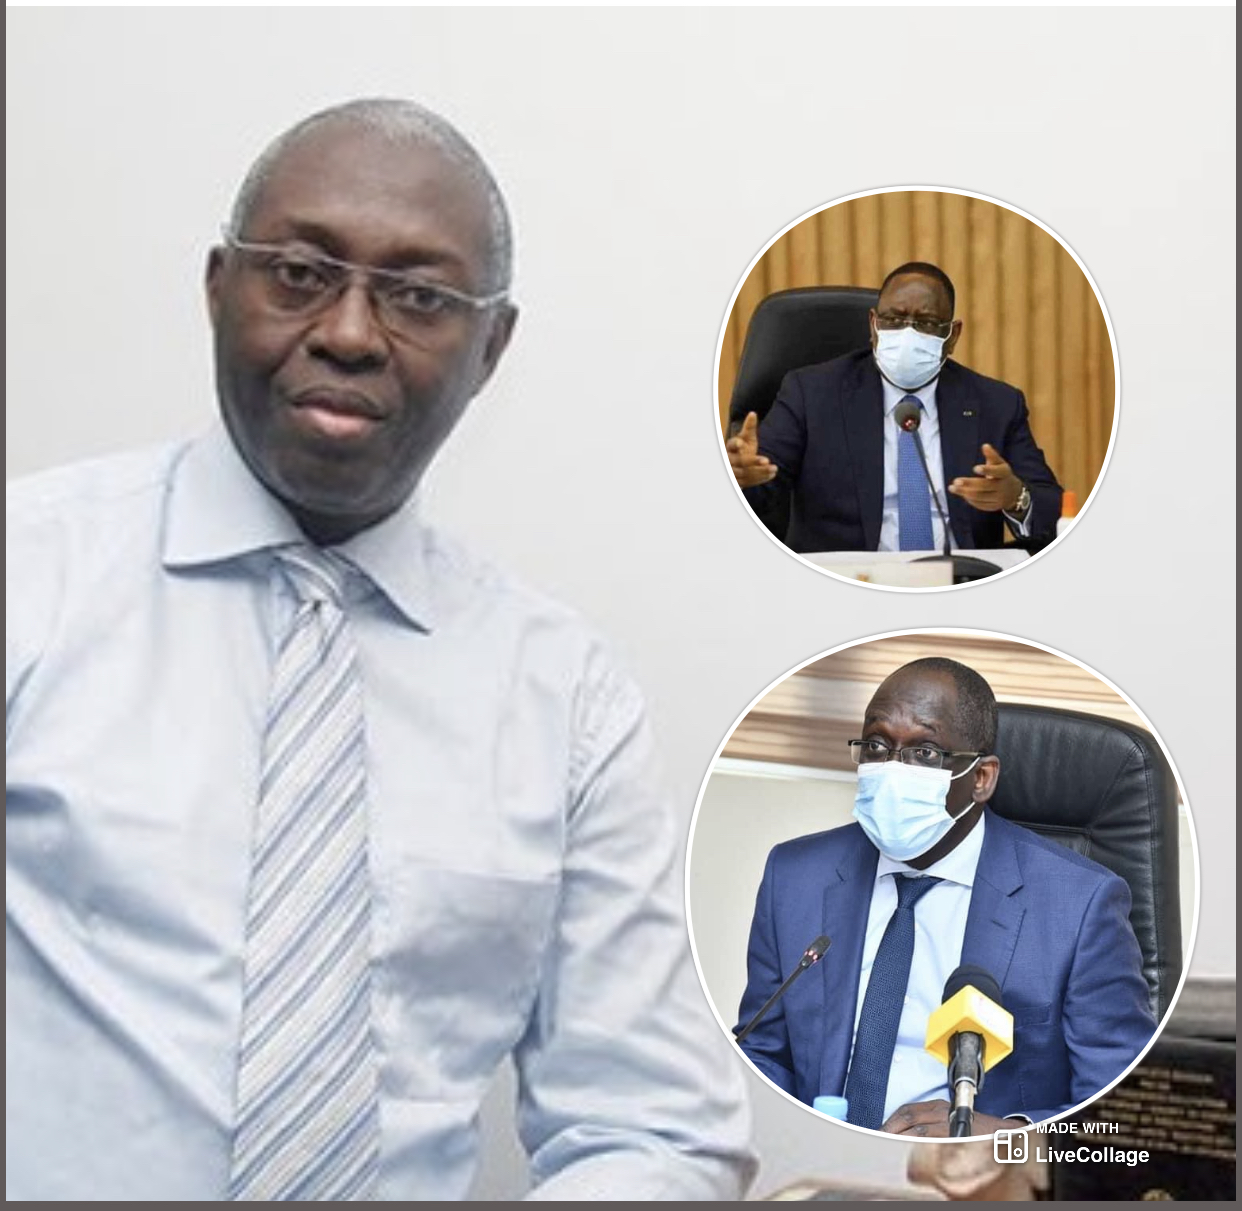 Rejet de la loi sur le parrainage et l'incendie à l'hôpital Maguette Lô : Mamadou Lamine Diallo tire sur le président Macky Sall et son ministre de la santé.